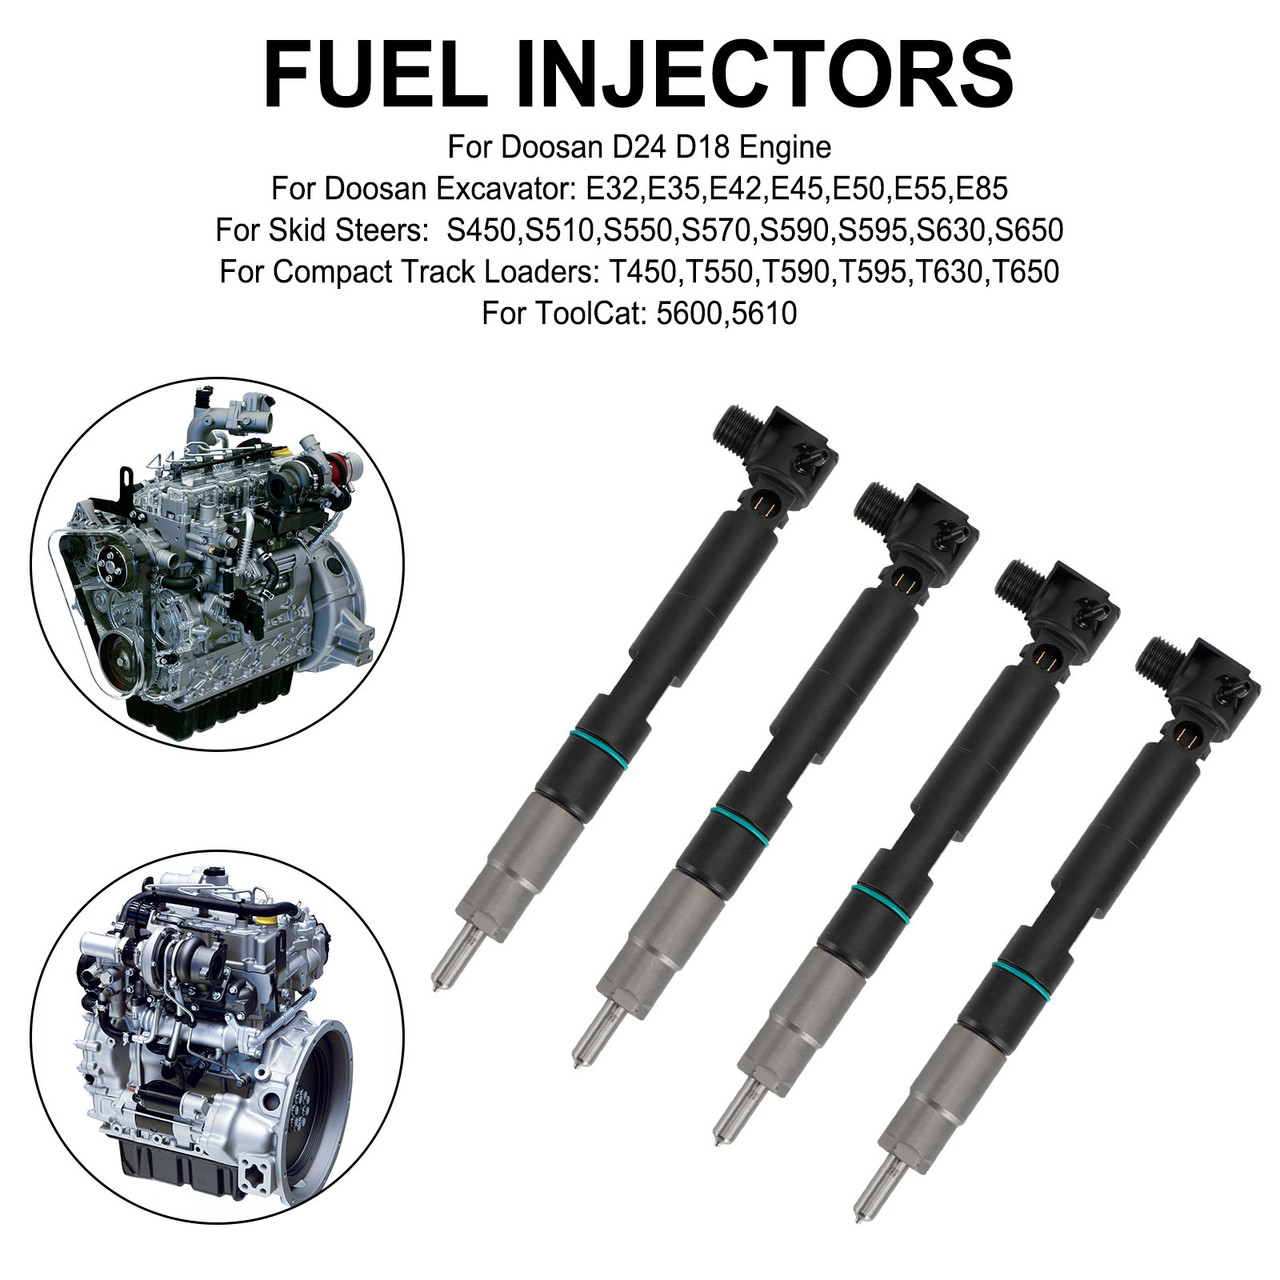 4PCS Fuel Injectors 400903-00074D fit Bobcat fit Skid Steers S450 S510 S630 28337917